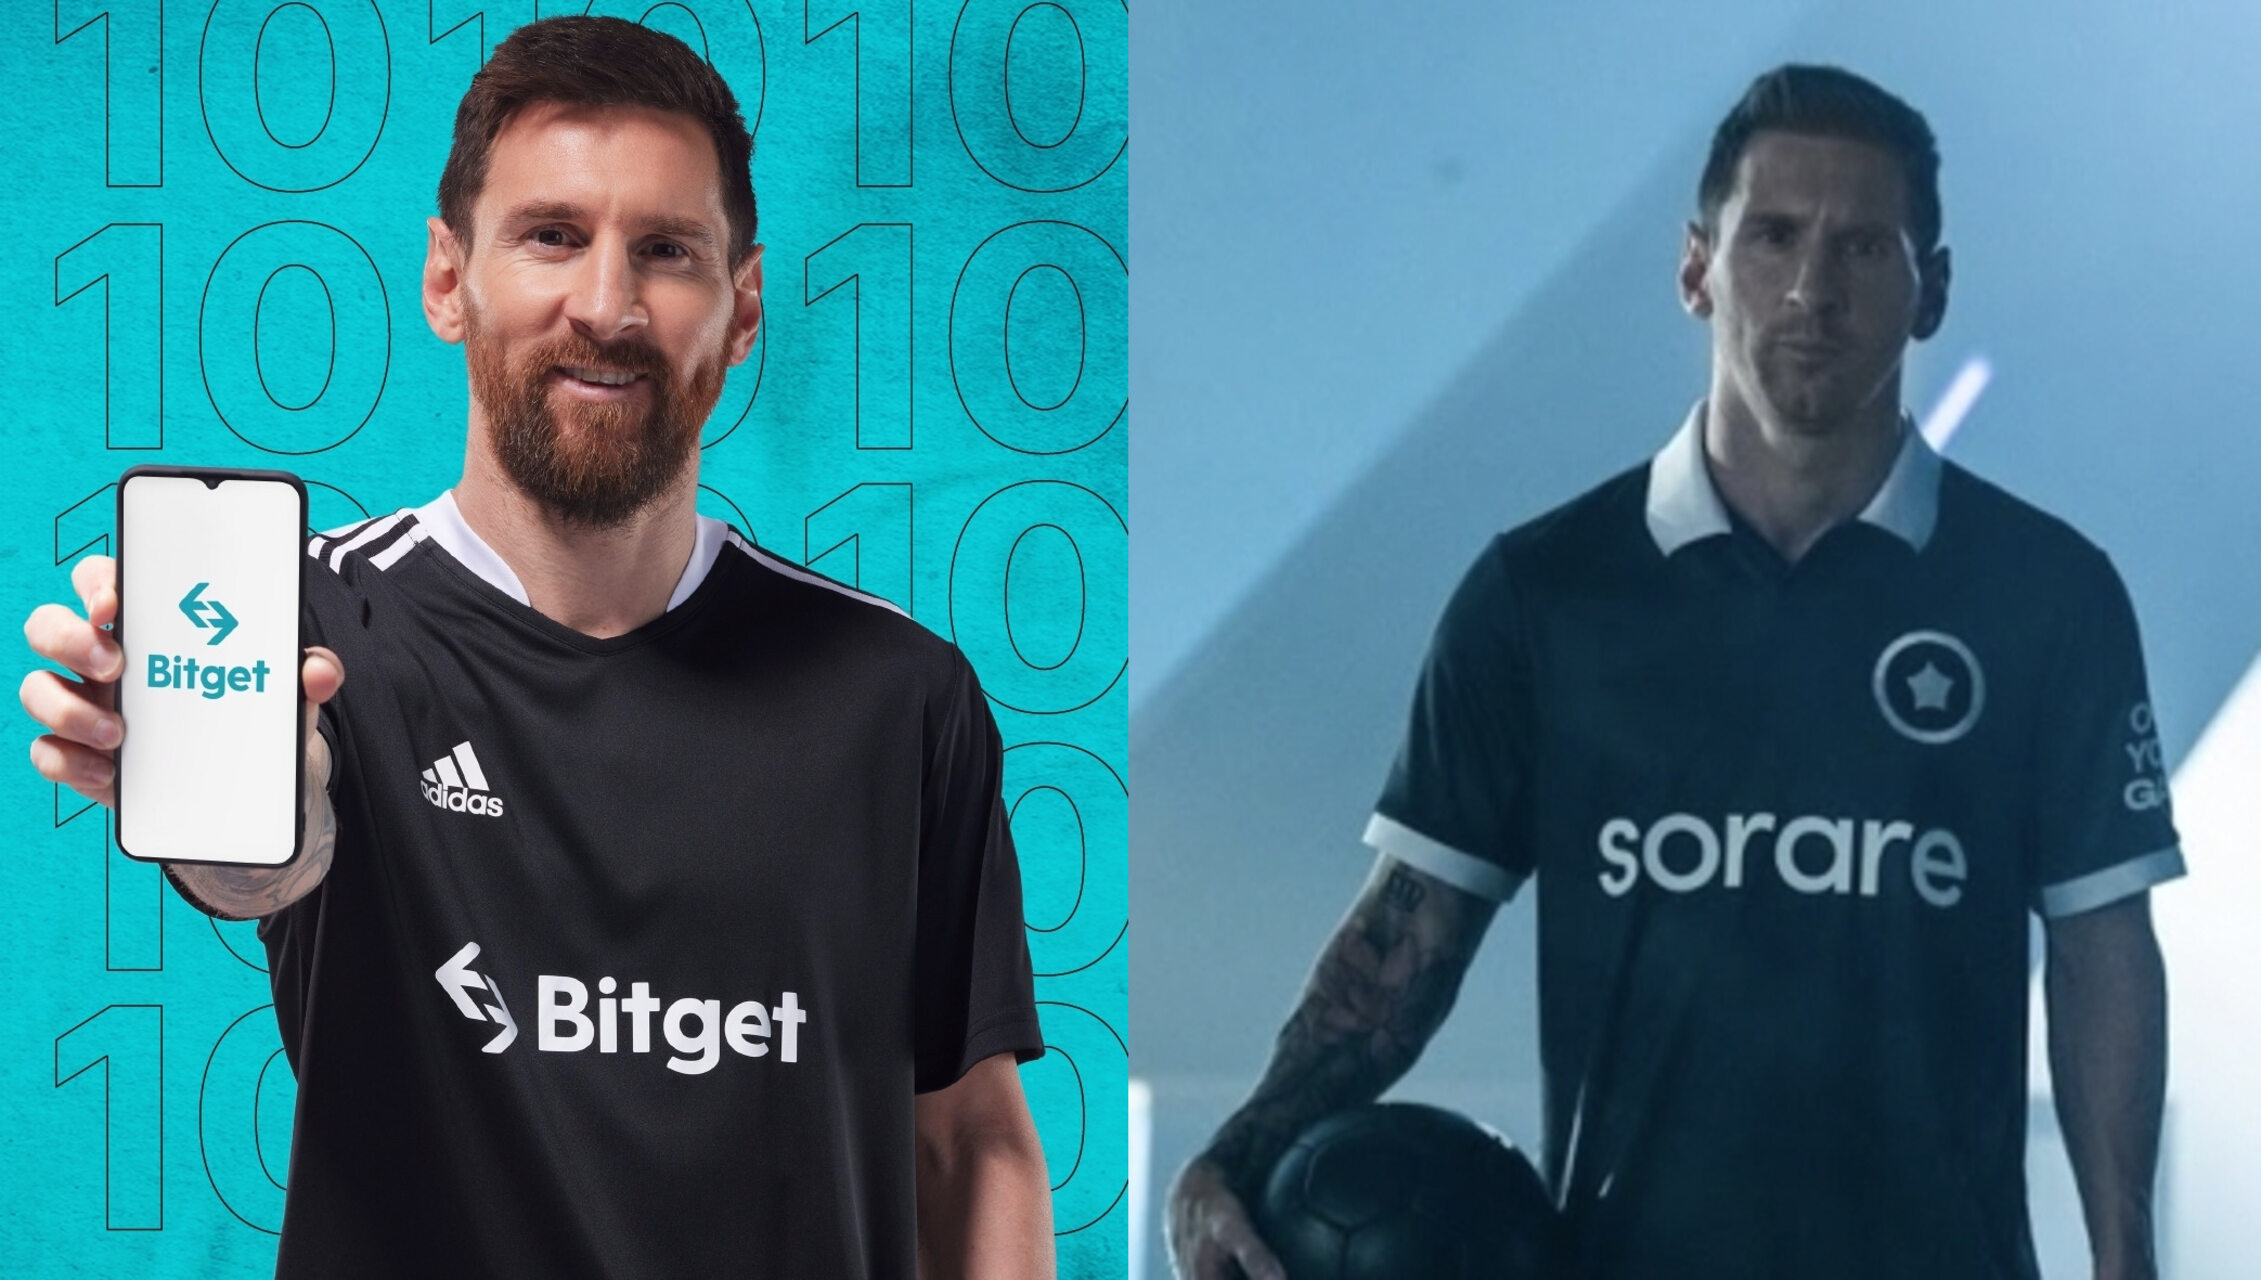 Las alianzas estratégicas de Bitget y Sorare con Lionel Messi